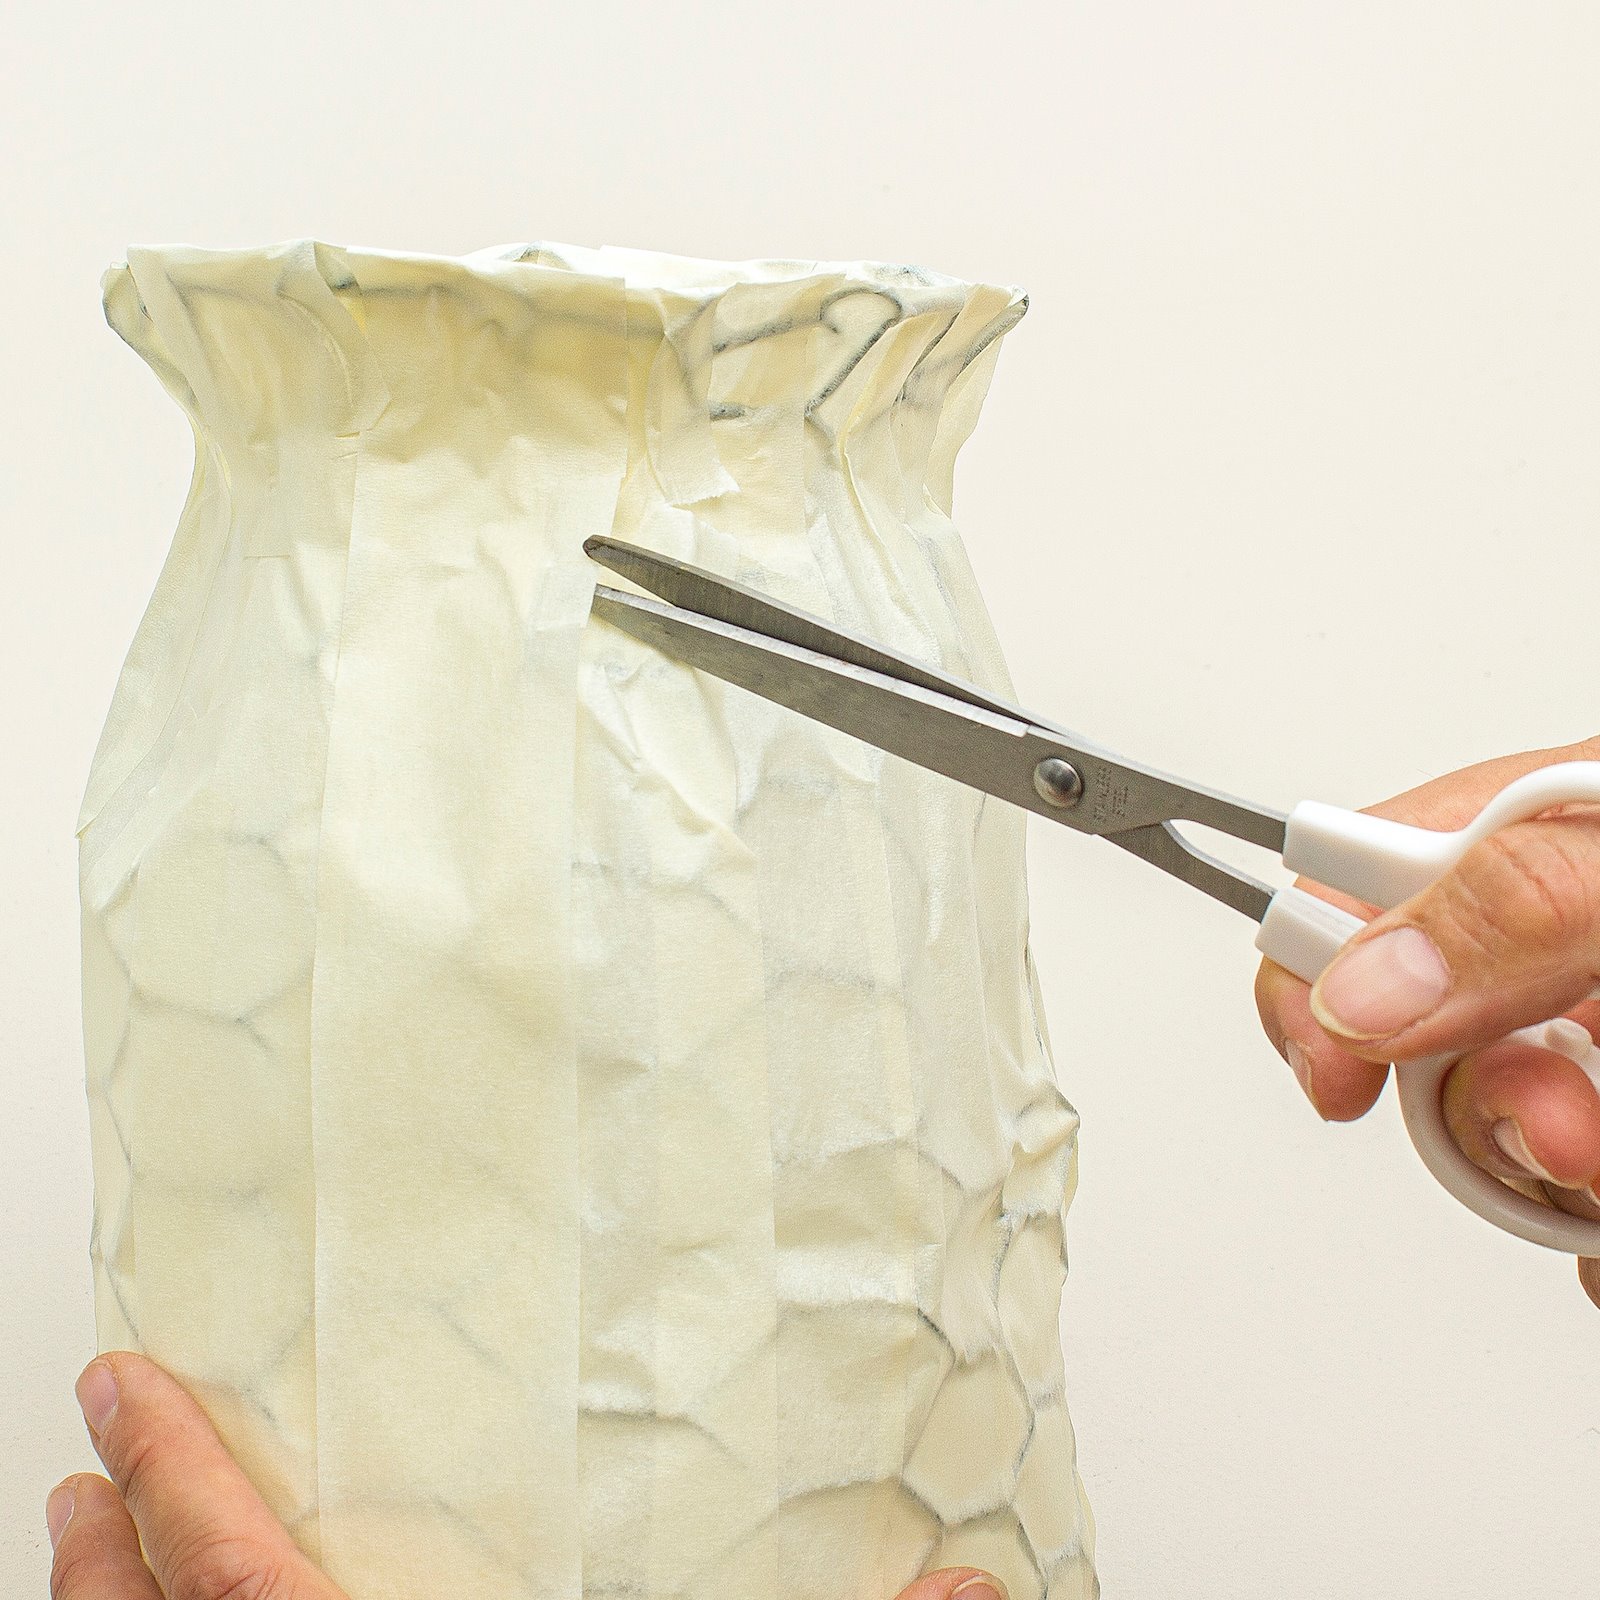 Fabric-covered Vase step8_vase.jpg